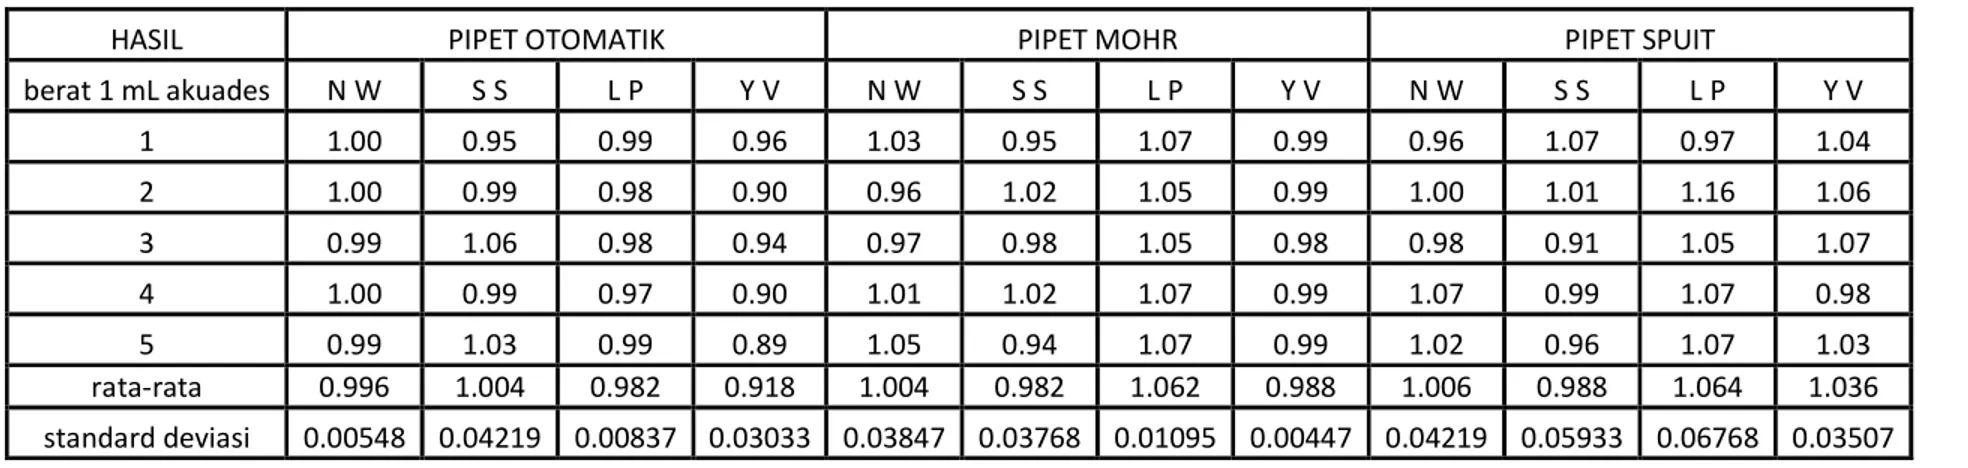 Tabel 2 : Penggunaan Pipet Otomatik, Mohr dan Spuit 